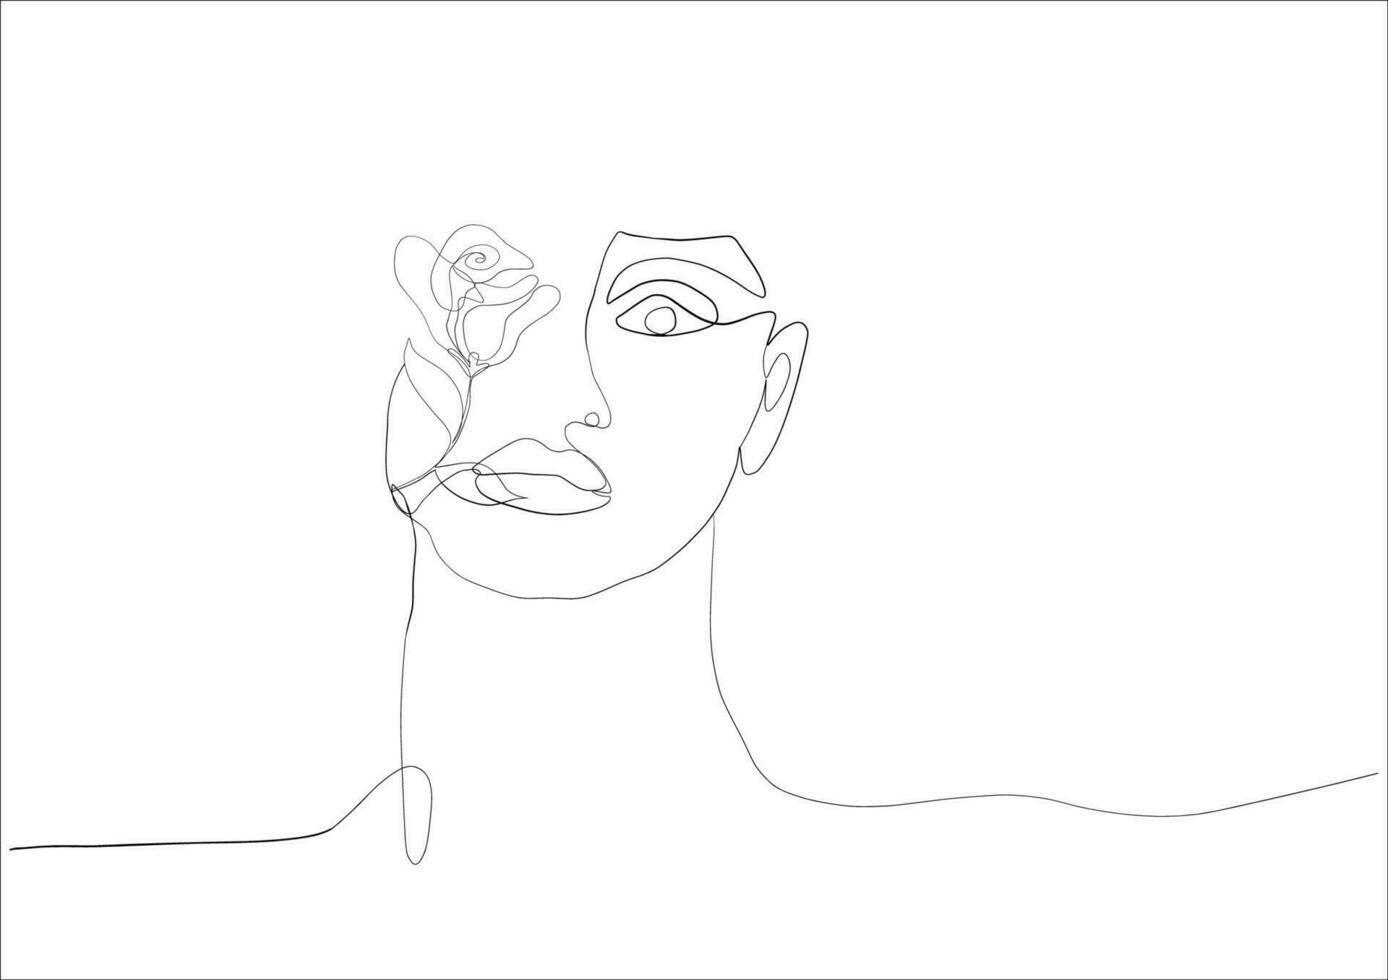 contínuo linha desenhando do face mulher.abstrato linha arte retrato, linha, contínua linha, desenho, vetor minimalismo estilo e esboço retrato conceito.